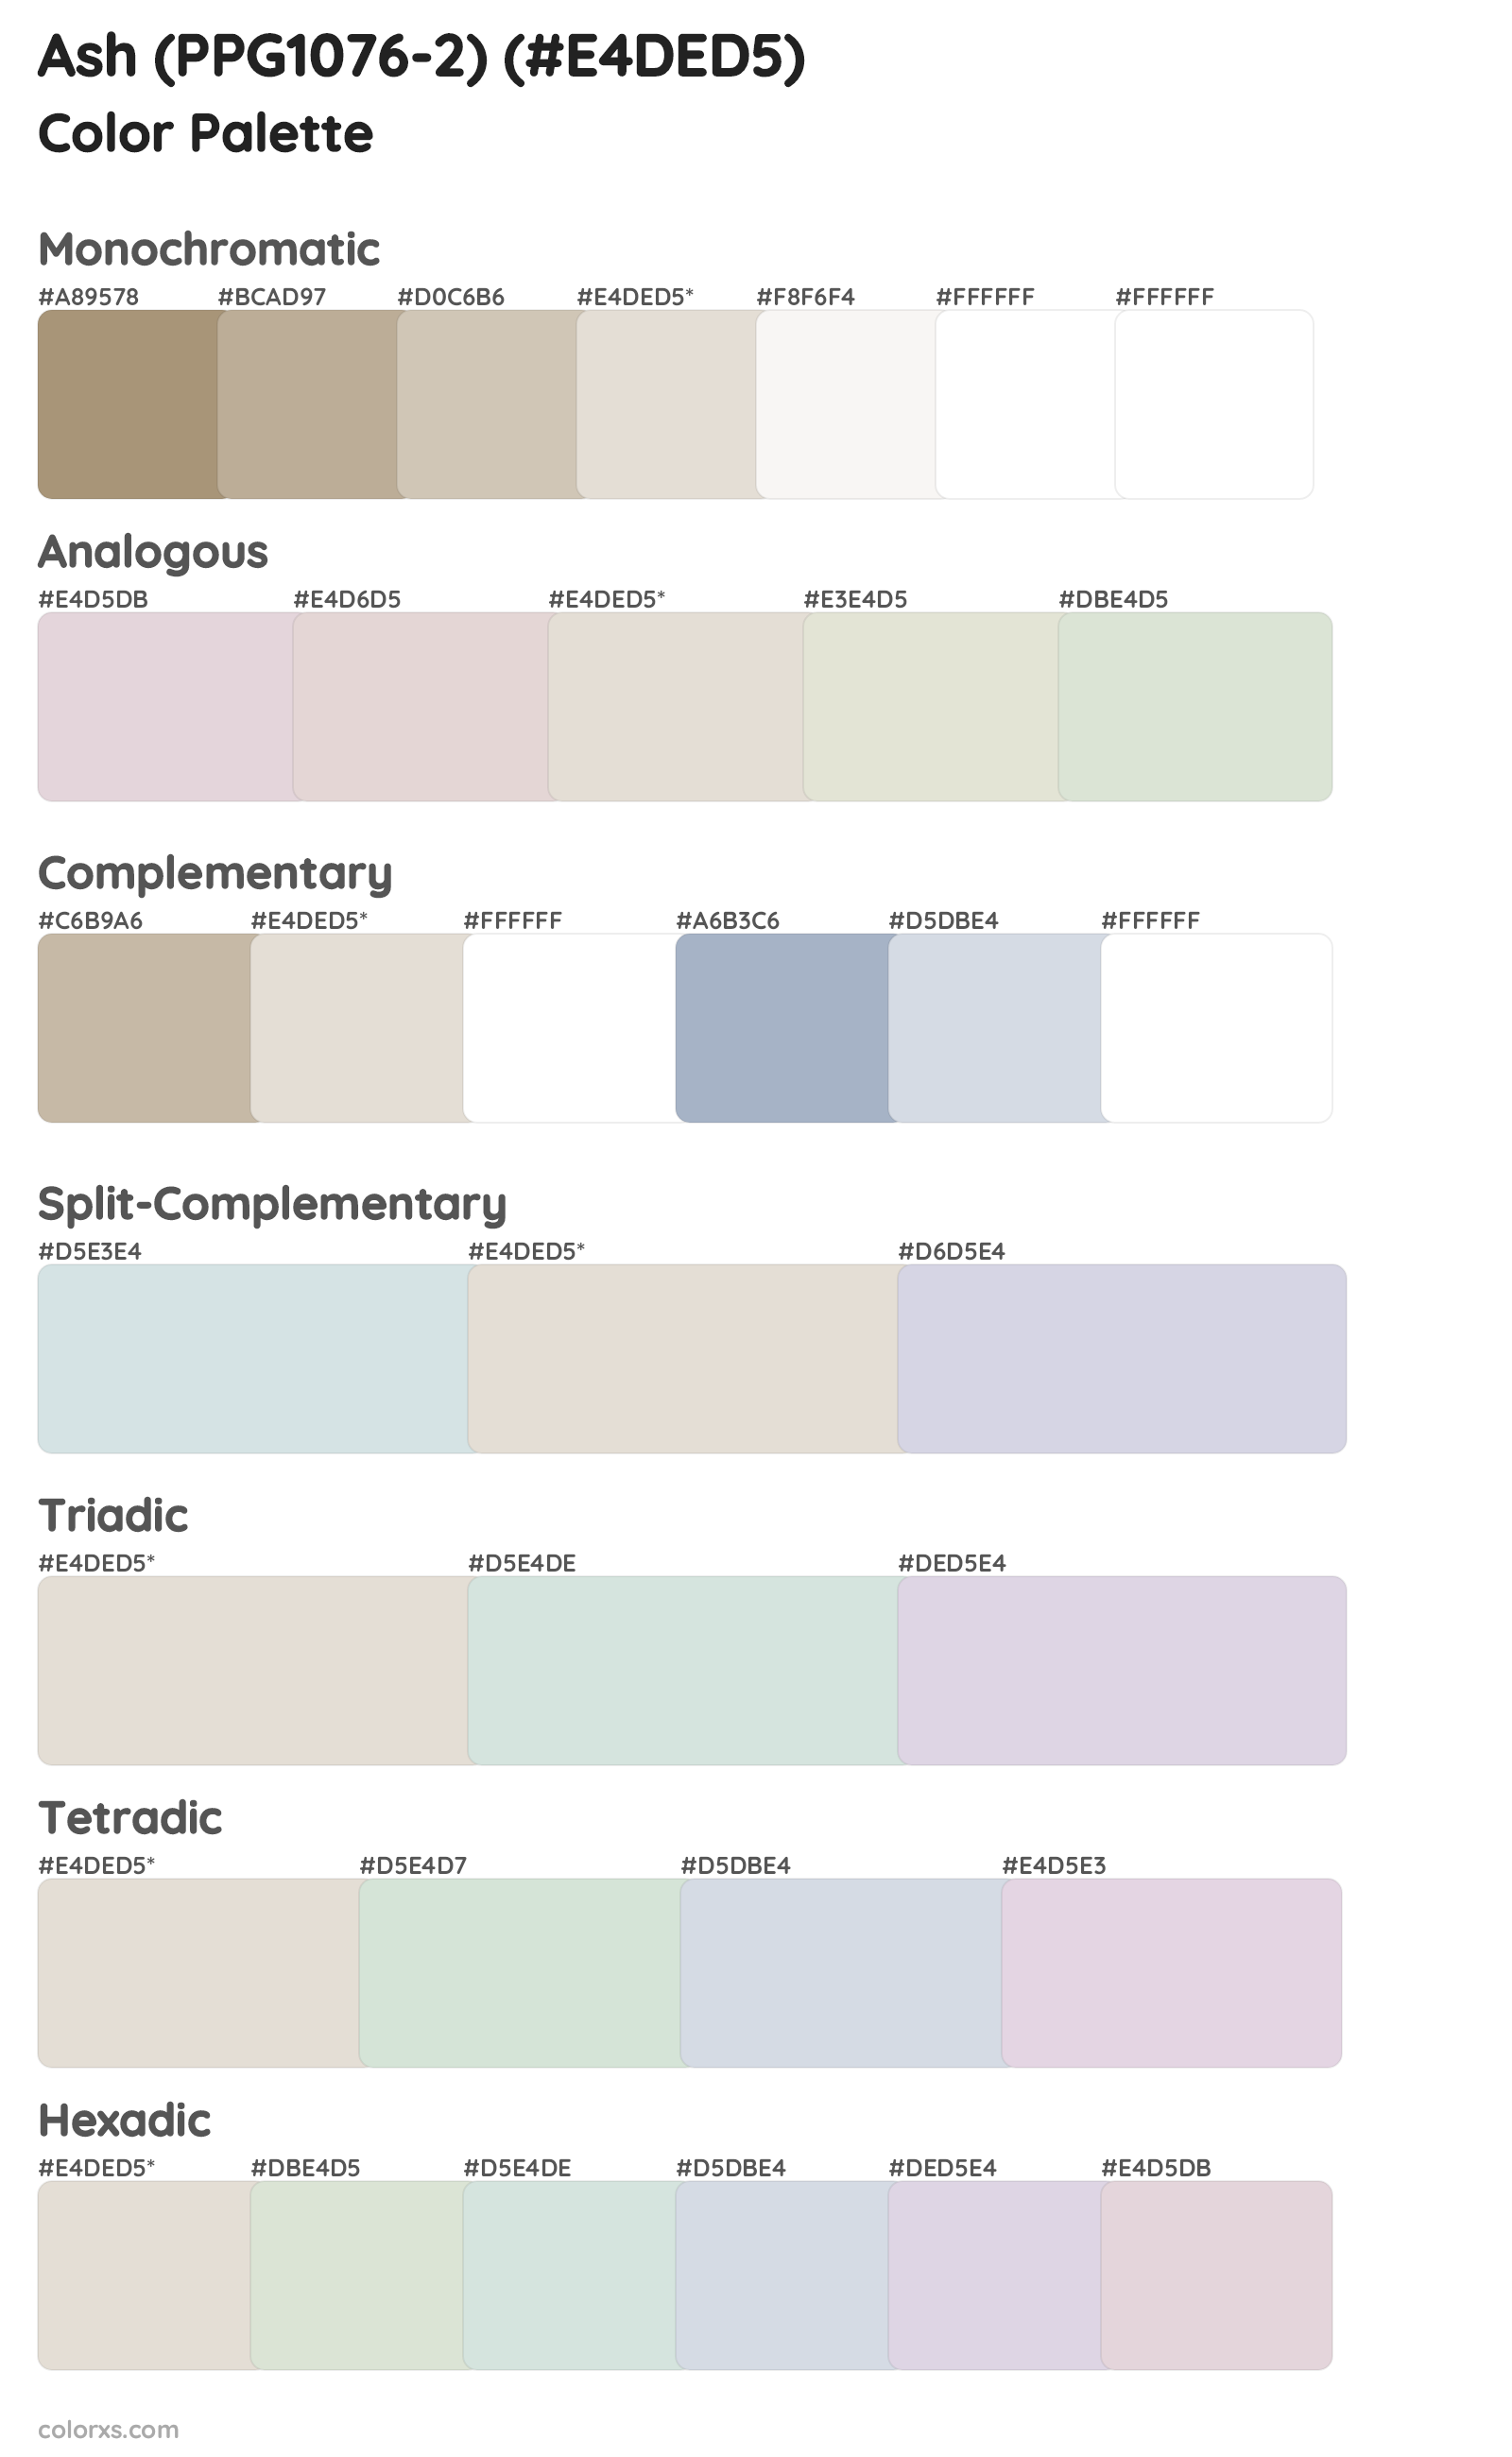 Ash (PPG1076-2) Color Scheme Palettes